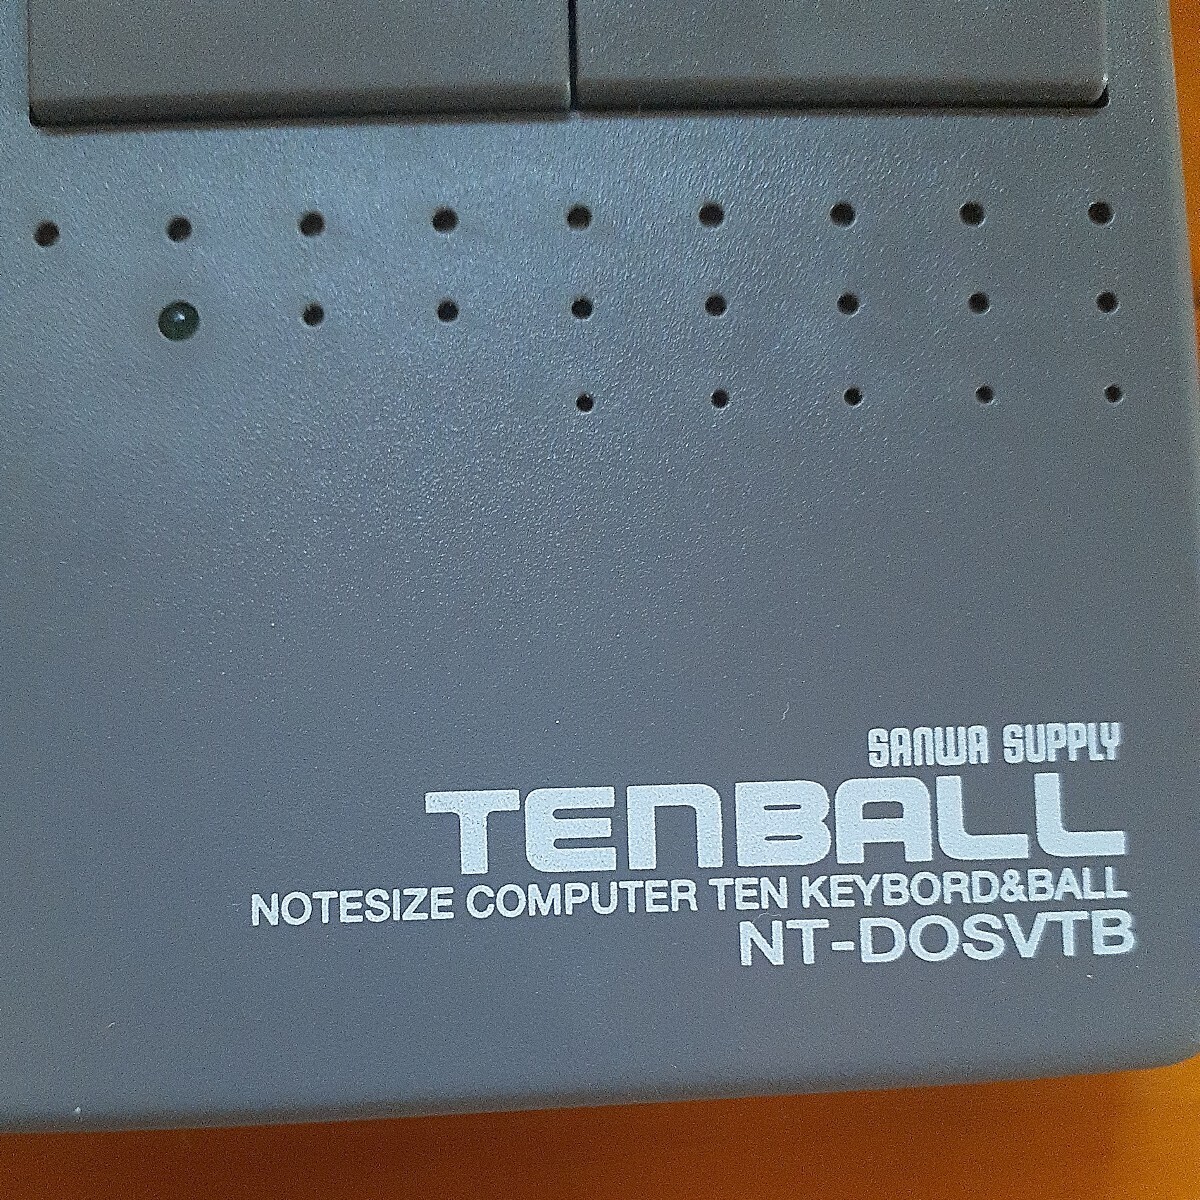  Sanwa Supply TEN BALL шаровой манипулятор есть цифровая клавиатура NT-DOSVTB изменение адаптер нет работоспособность не проверялась стоимость доставки 520 иен 